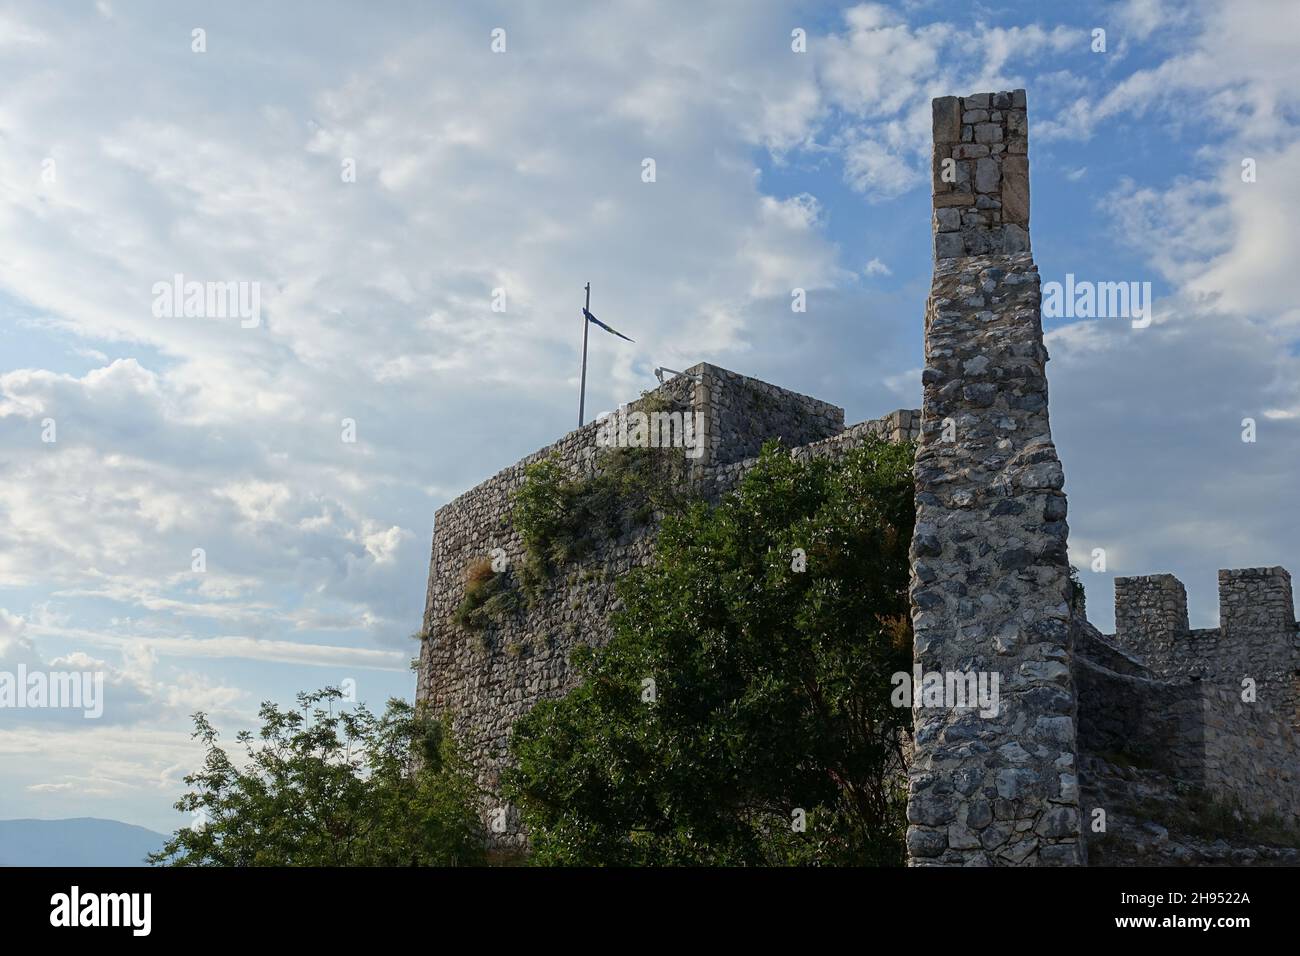 Ancienne forteresse de Blagaj (Stjepan-grad, ou Stipan-grad), partie du site historique de Blagaj près de Mostar, Bosnie-Herzégovine Banque D'Images